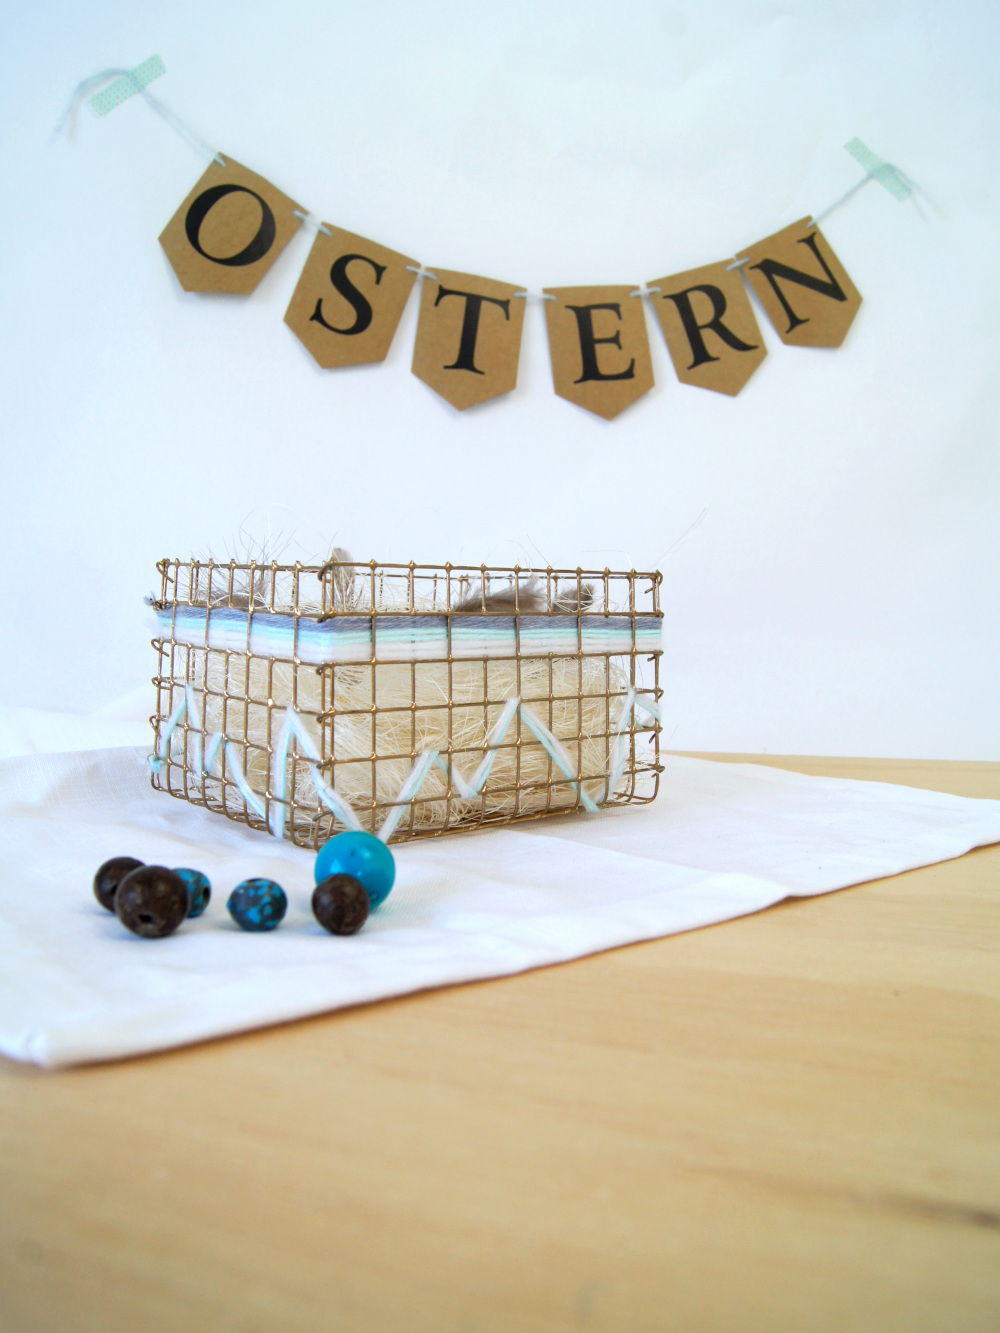 Bastelanleitung für einen Osterkorb aus Draht | #basteln und #DIY für #ostern | von Fantasiewerk